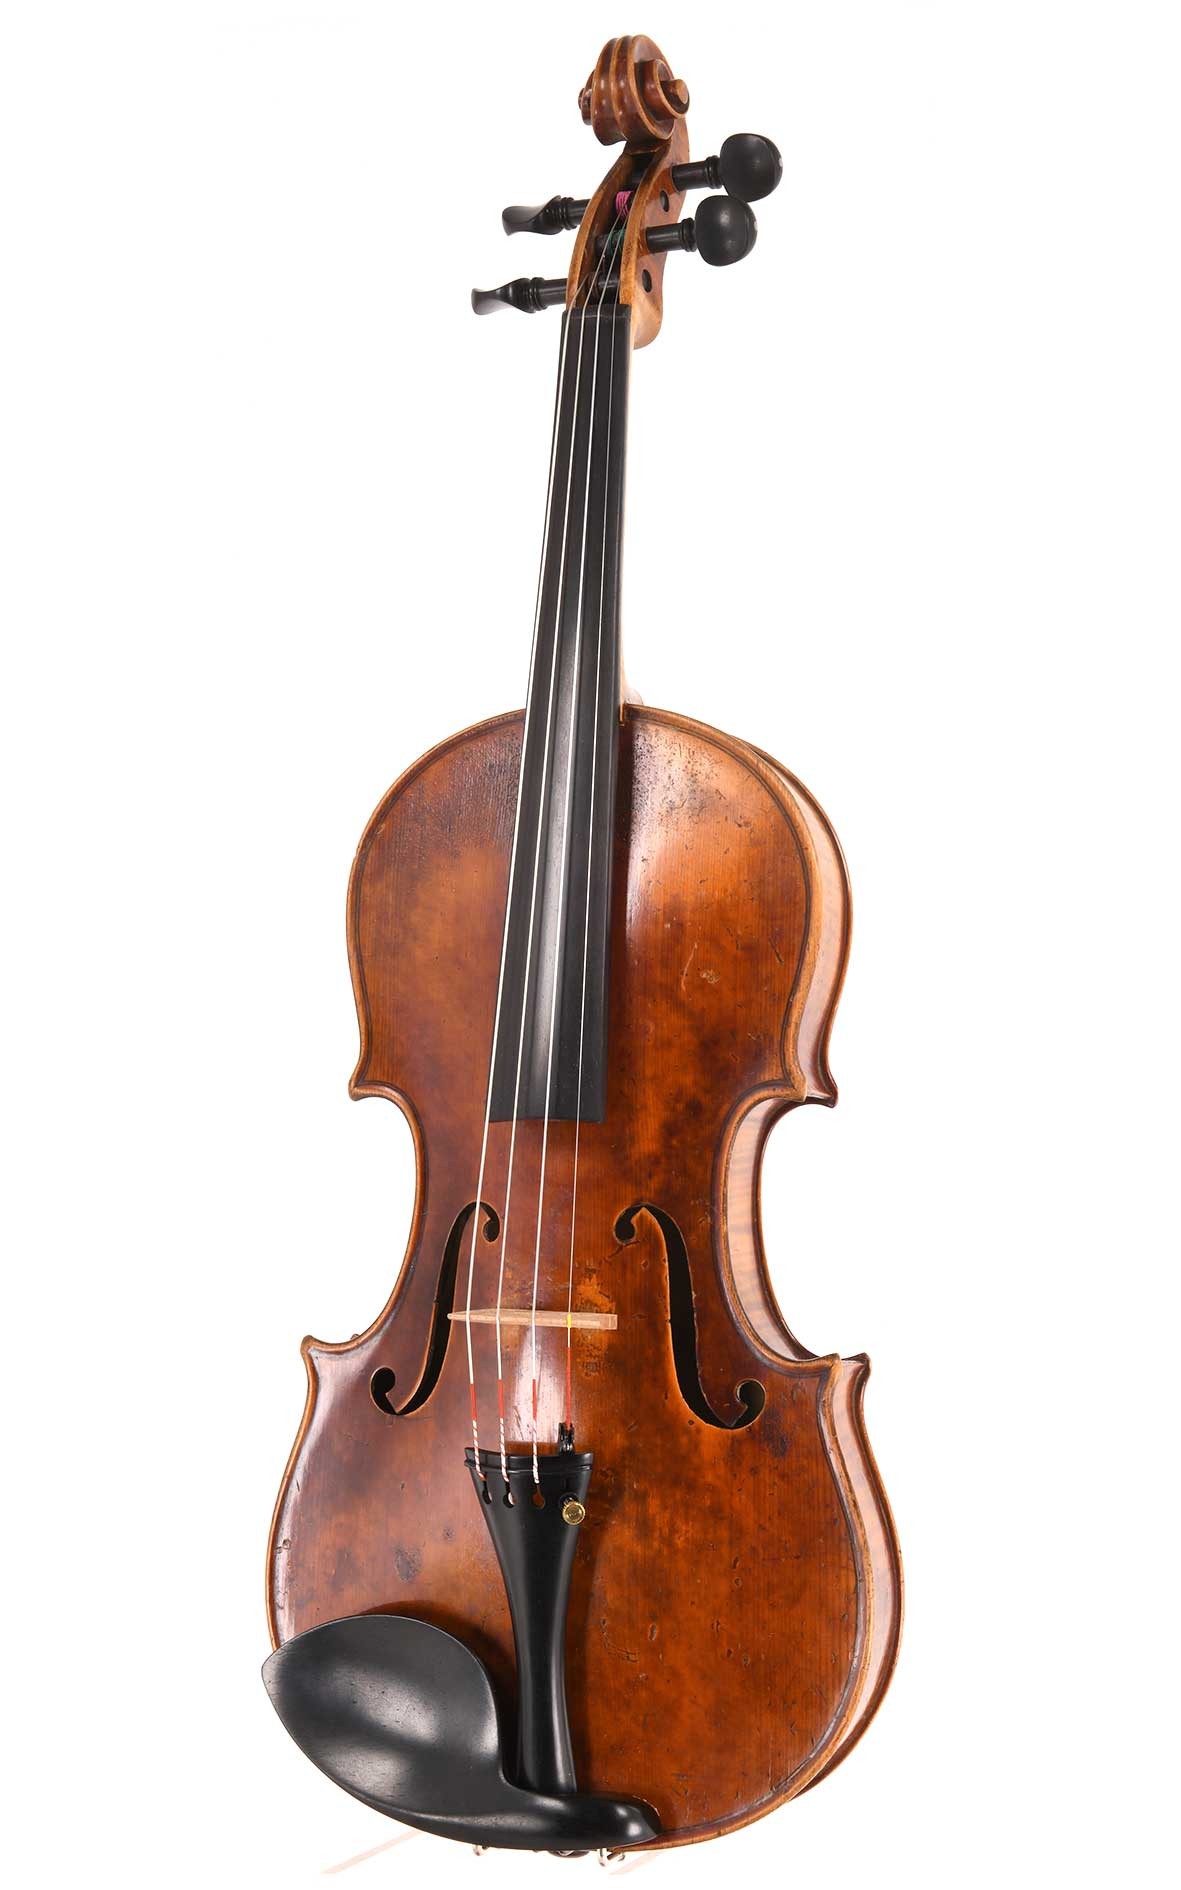 French violin, Mirecourt - Conservatoire de Musique Paris